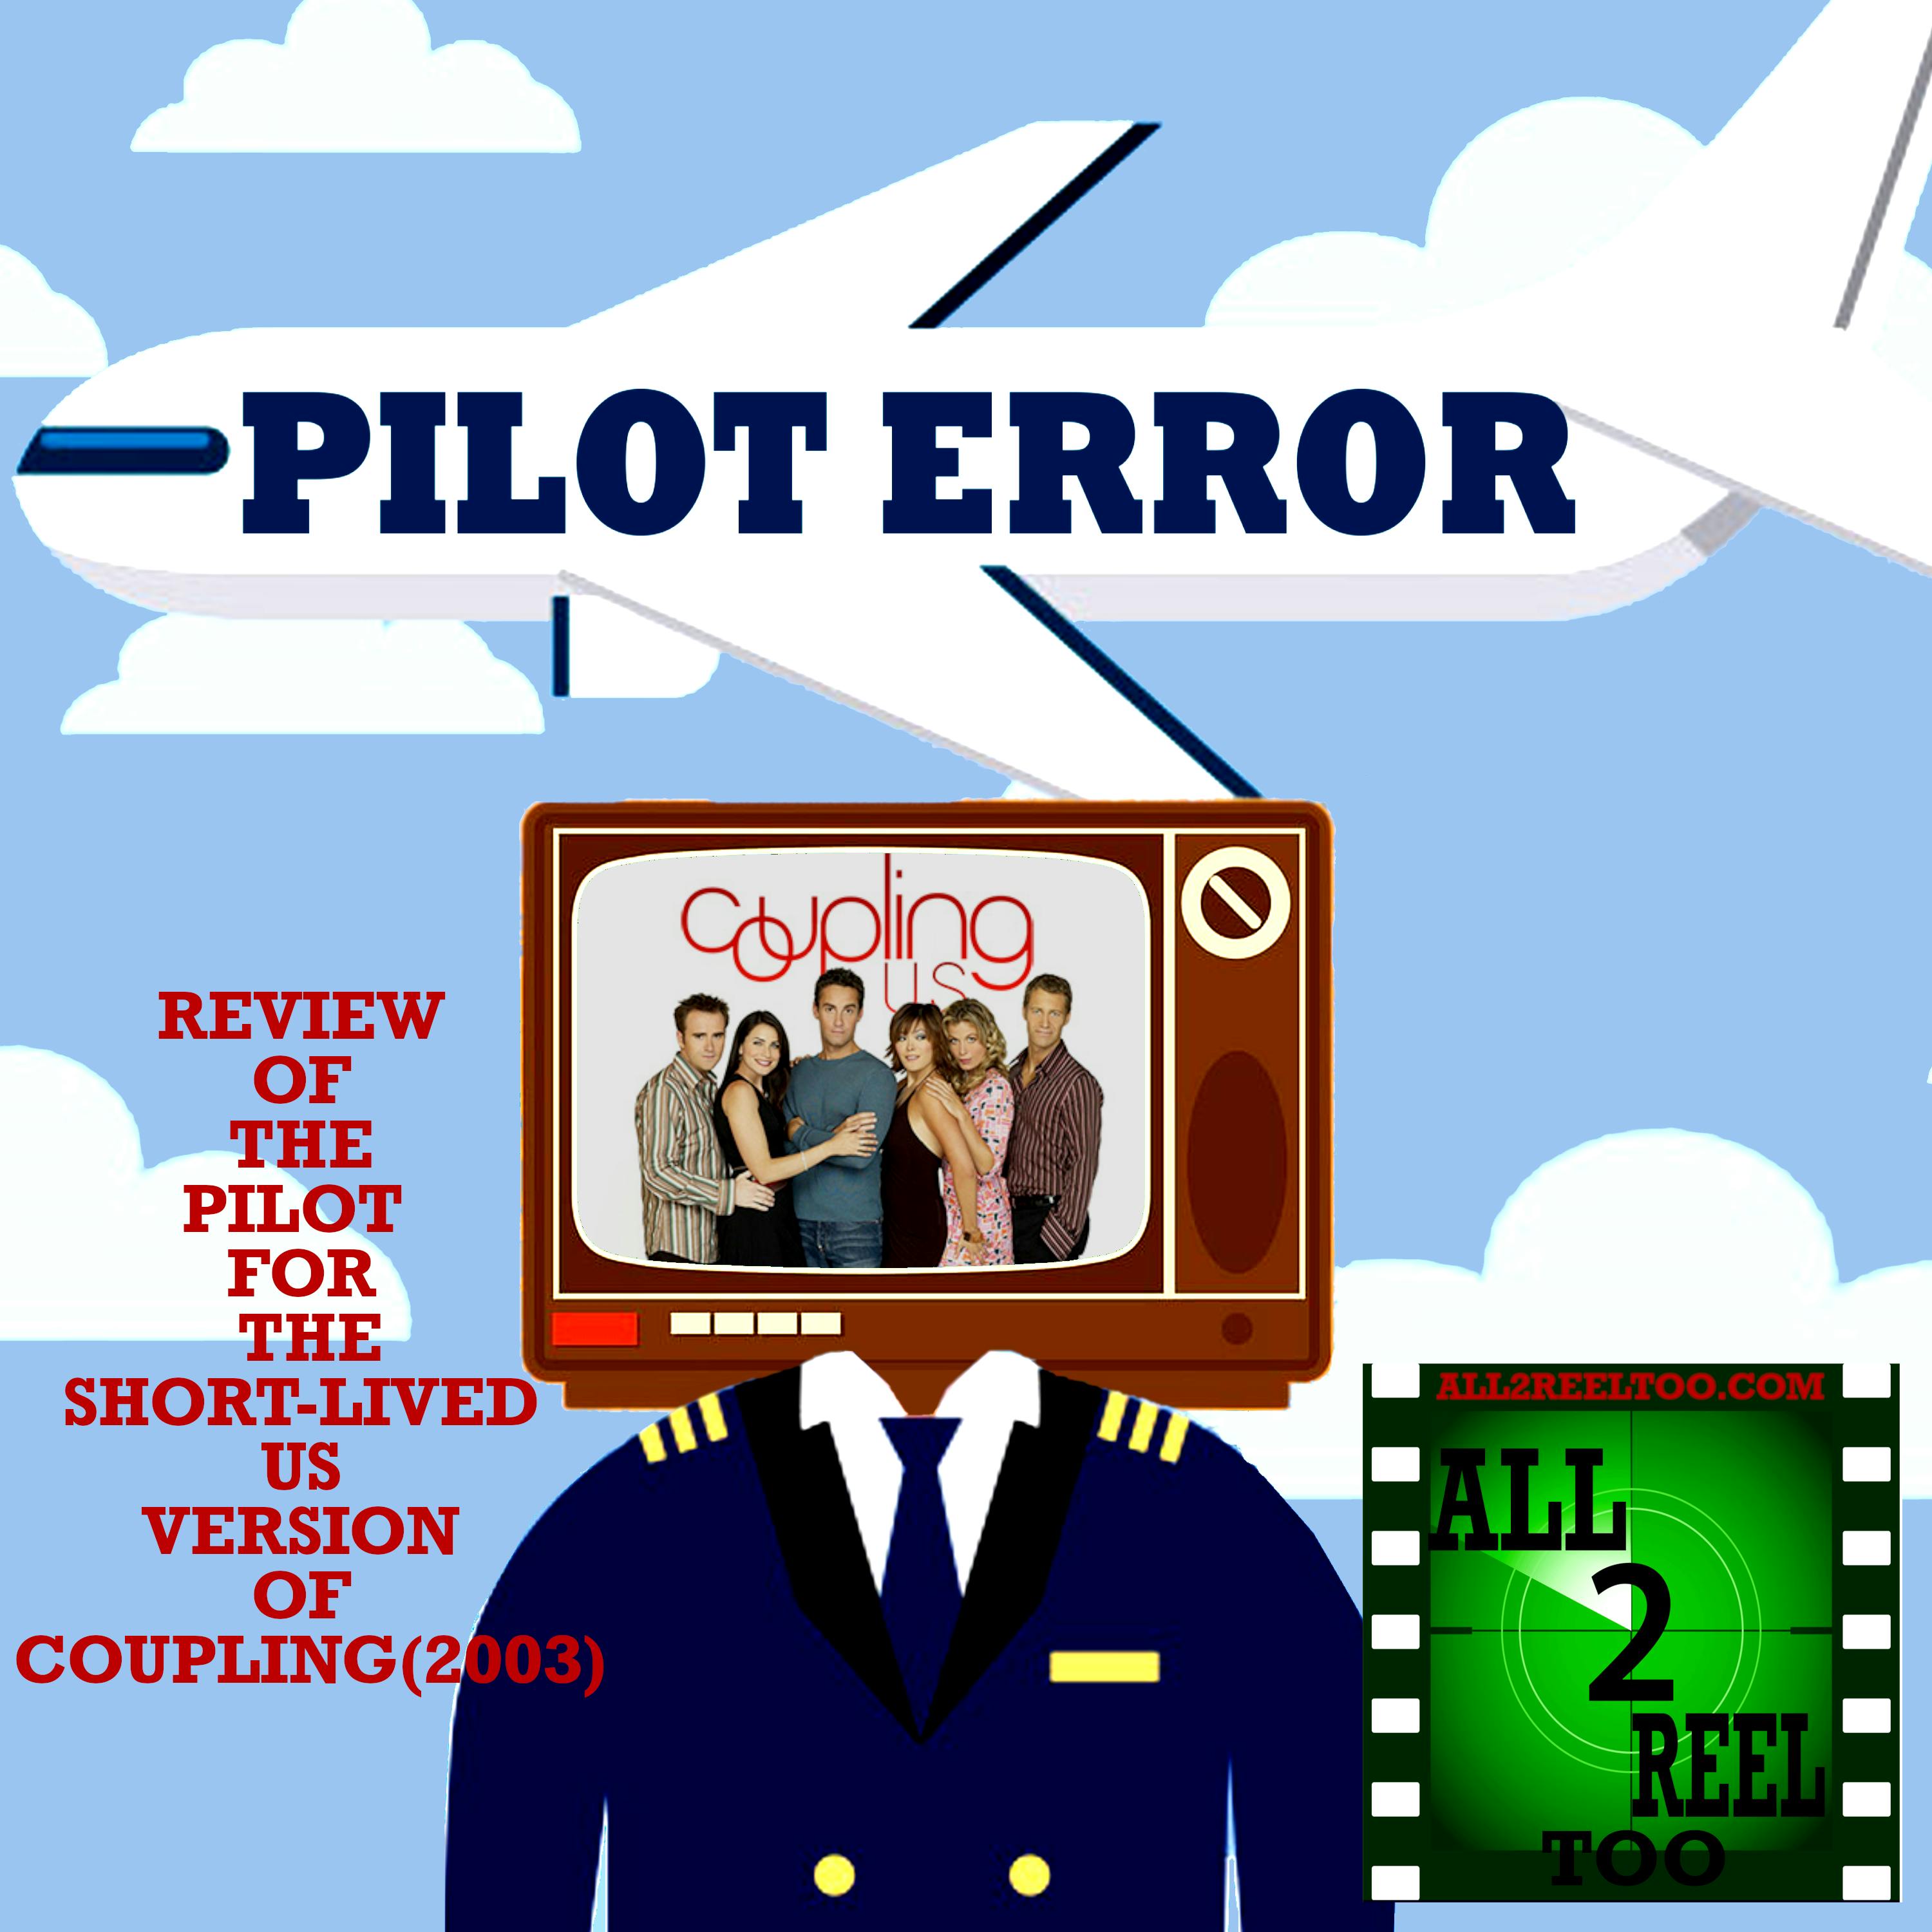 Coupling (2003)  U.S. Version - PILOT ERROR REVIEW